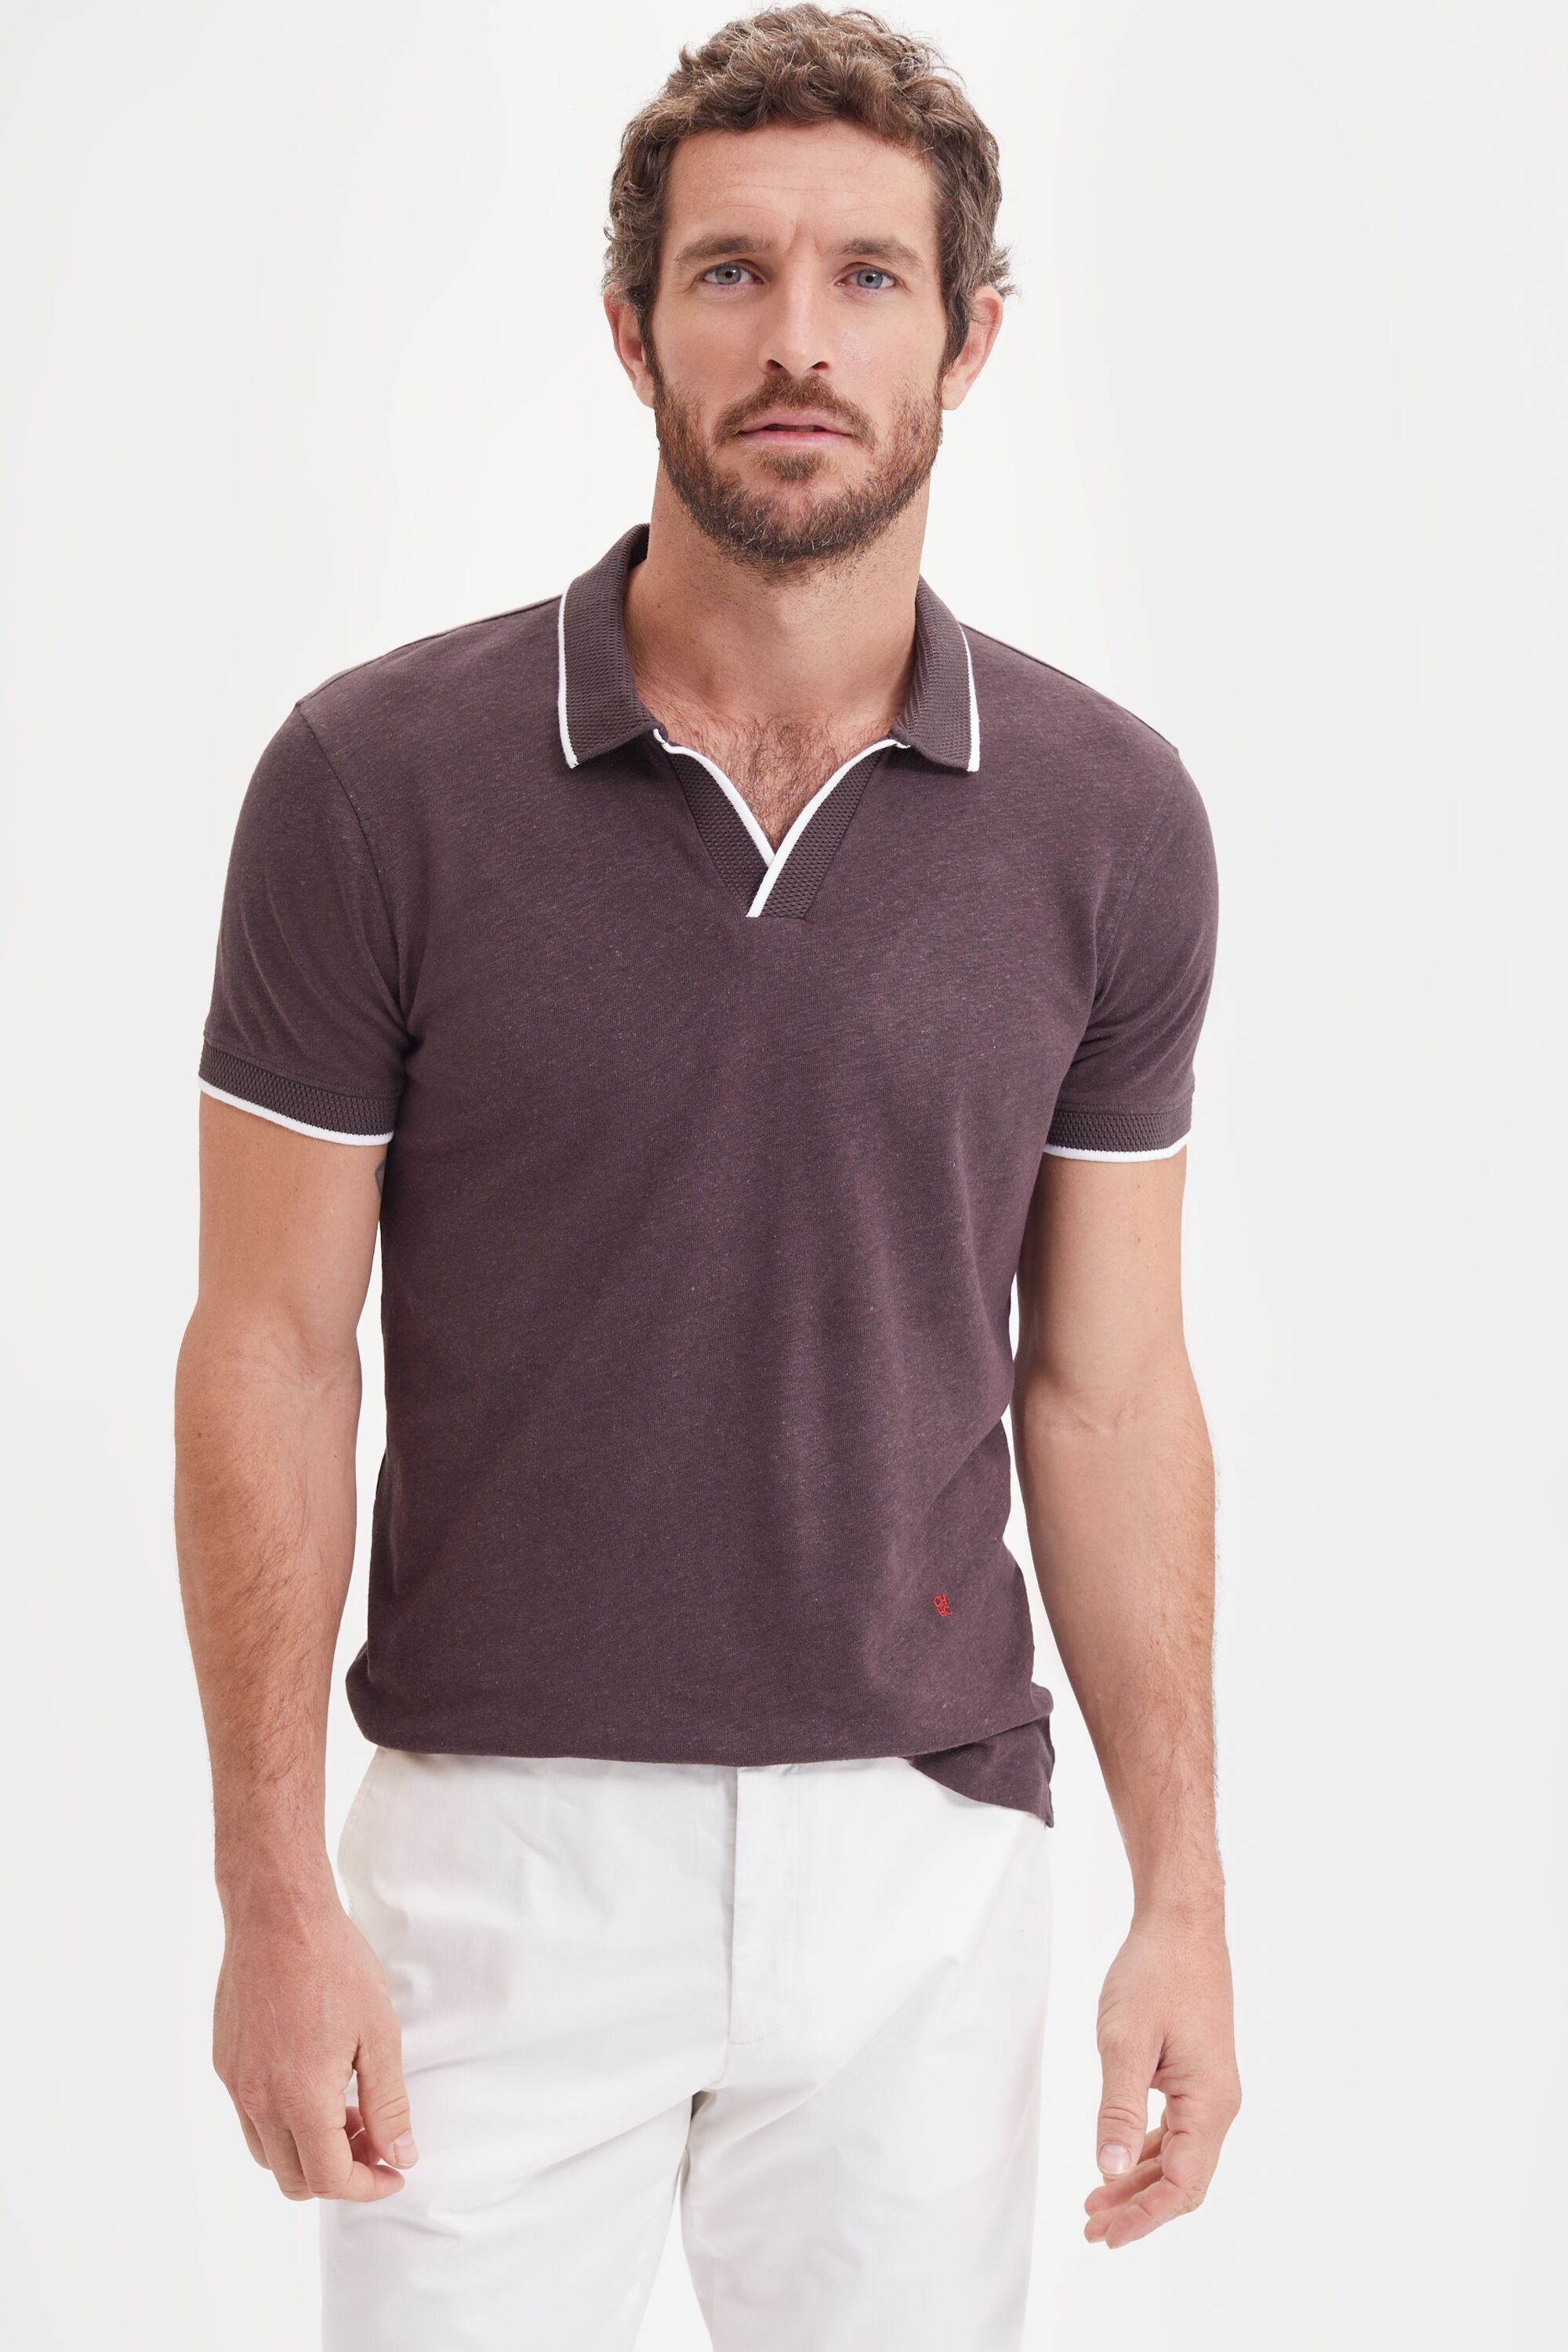 Open collar structured linen-blend polo shirt